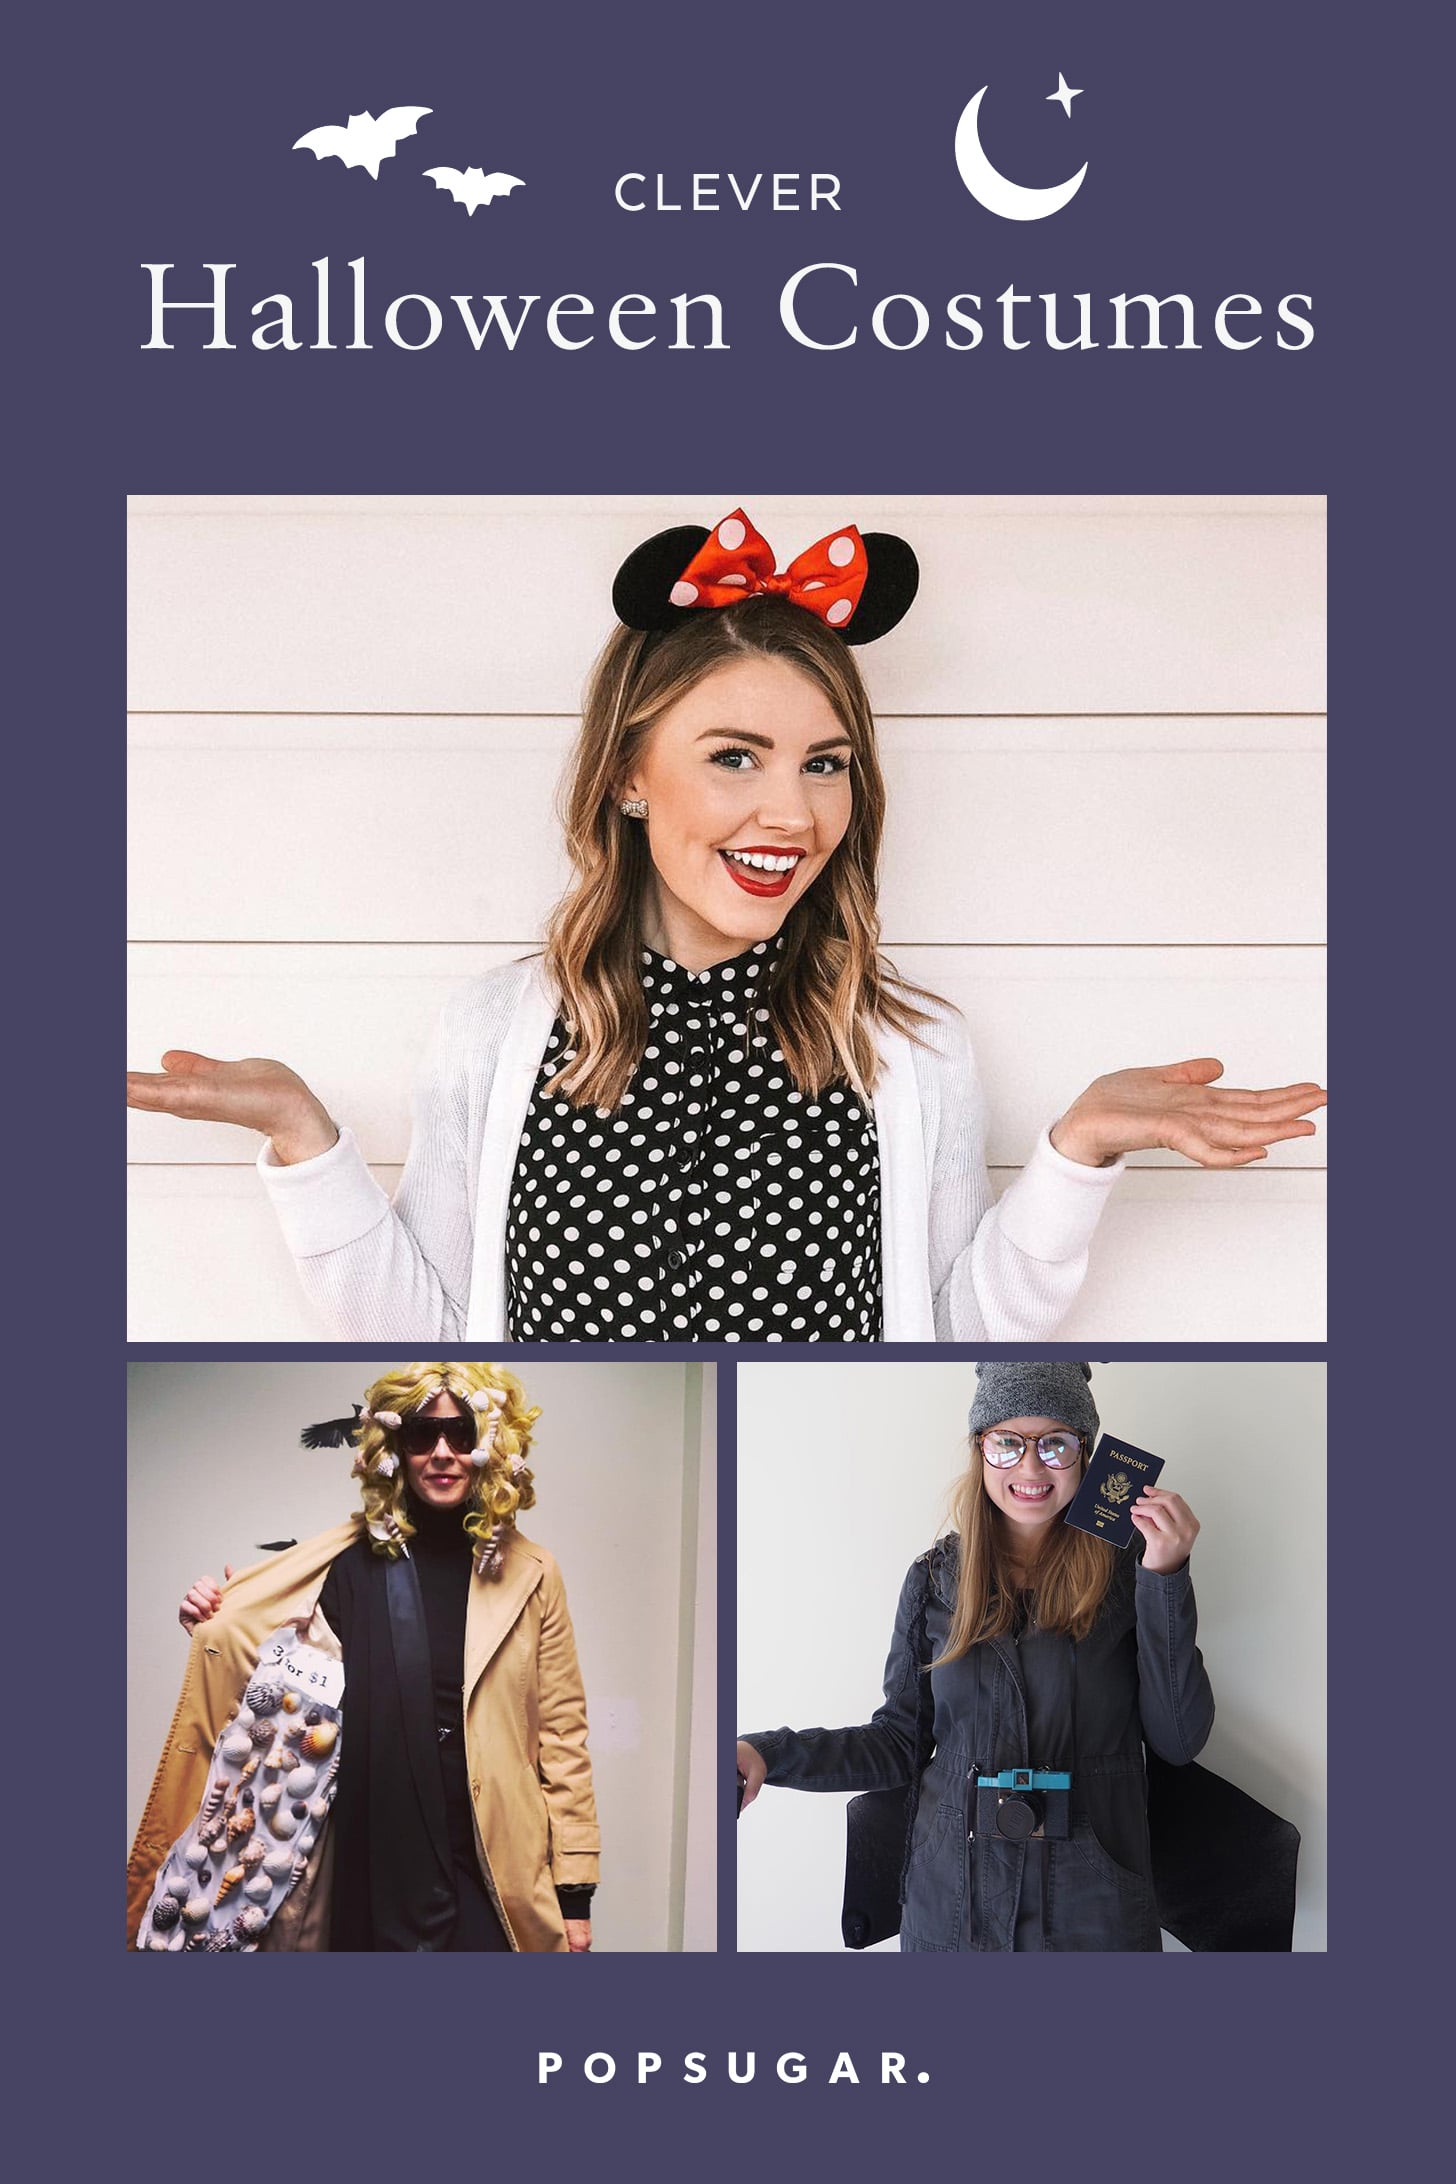 Clever Halloween Costumes 2020 Popsugar Smart Living - best roblox halloween costumes 2019